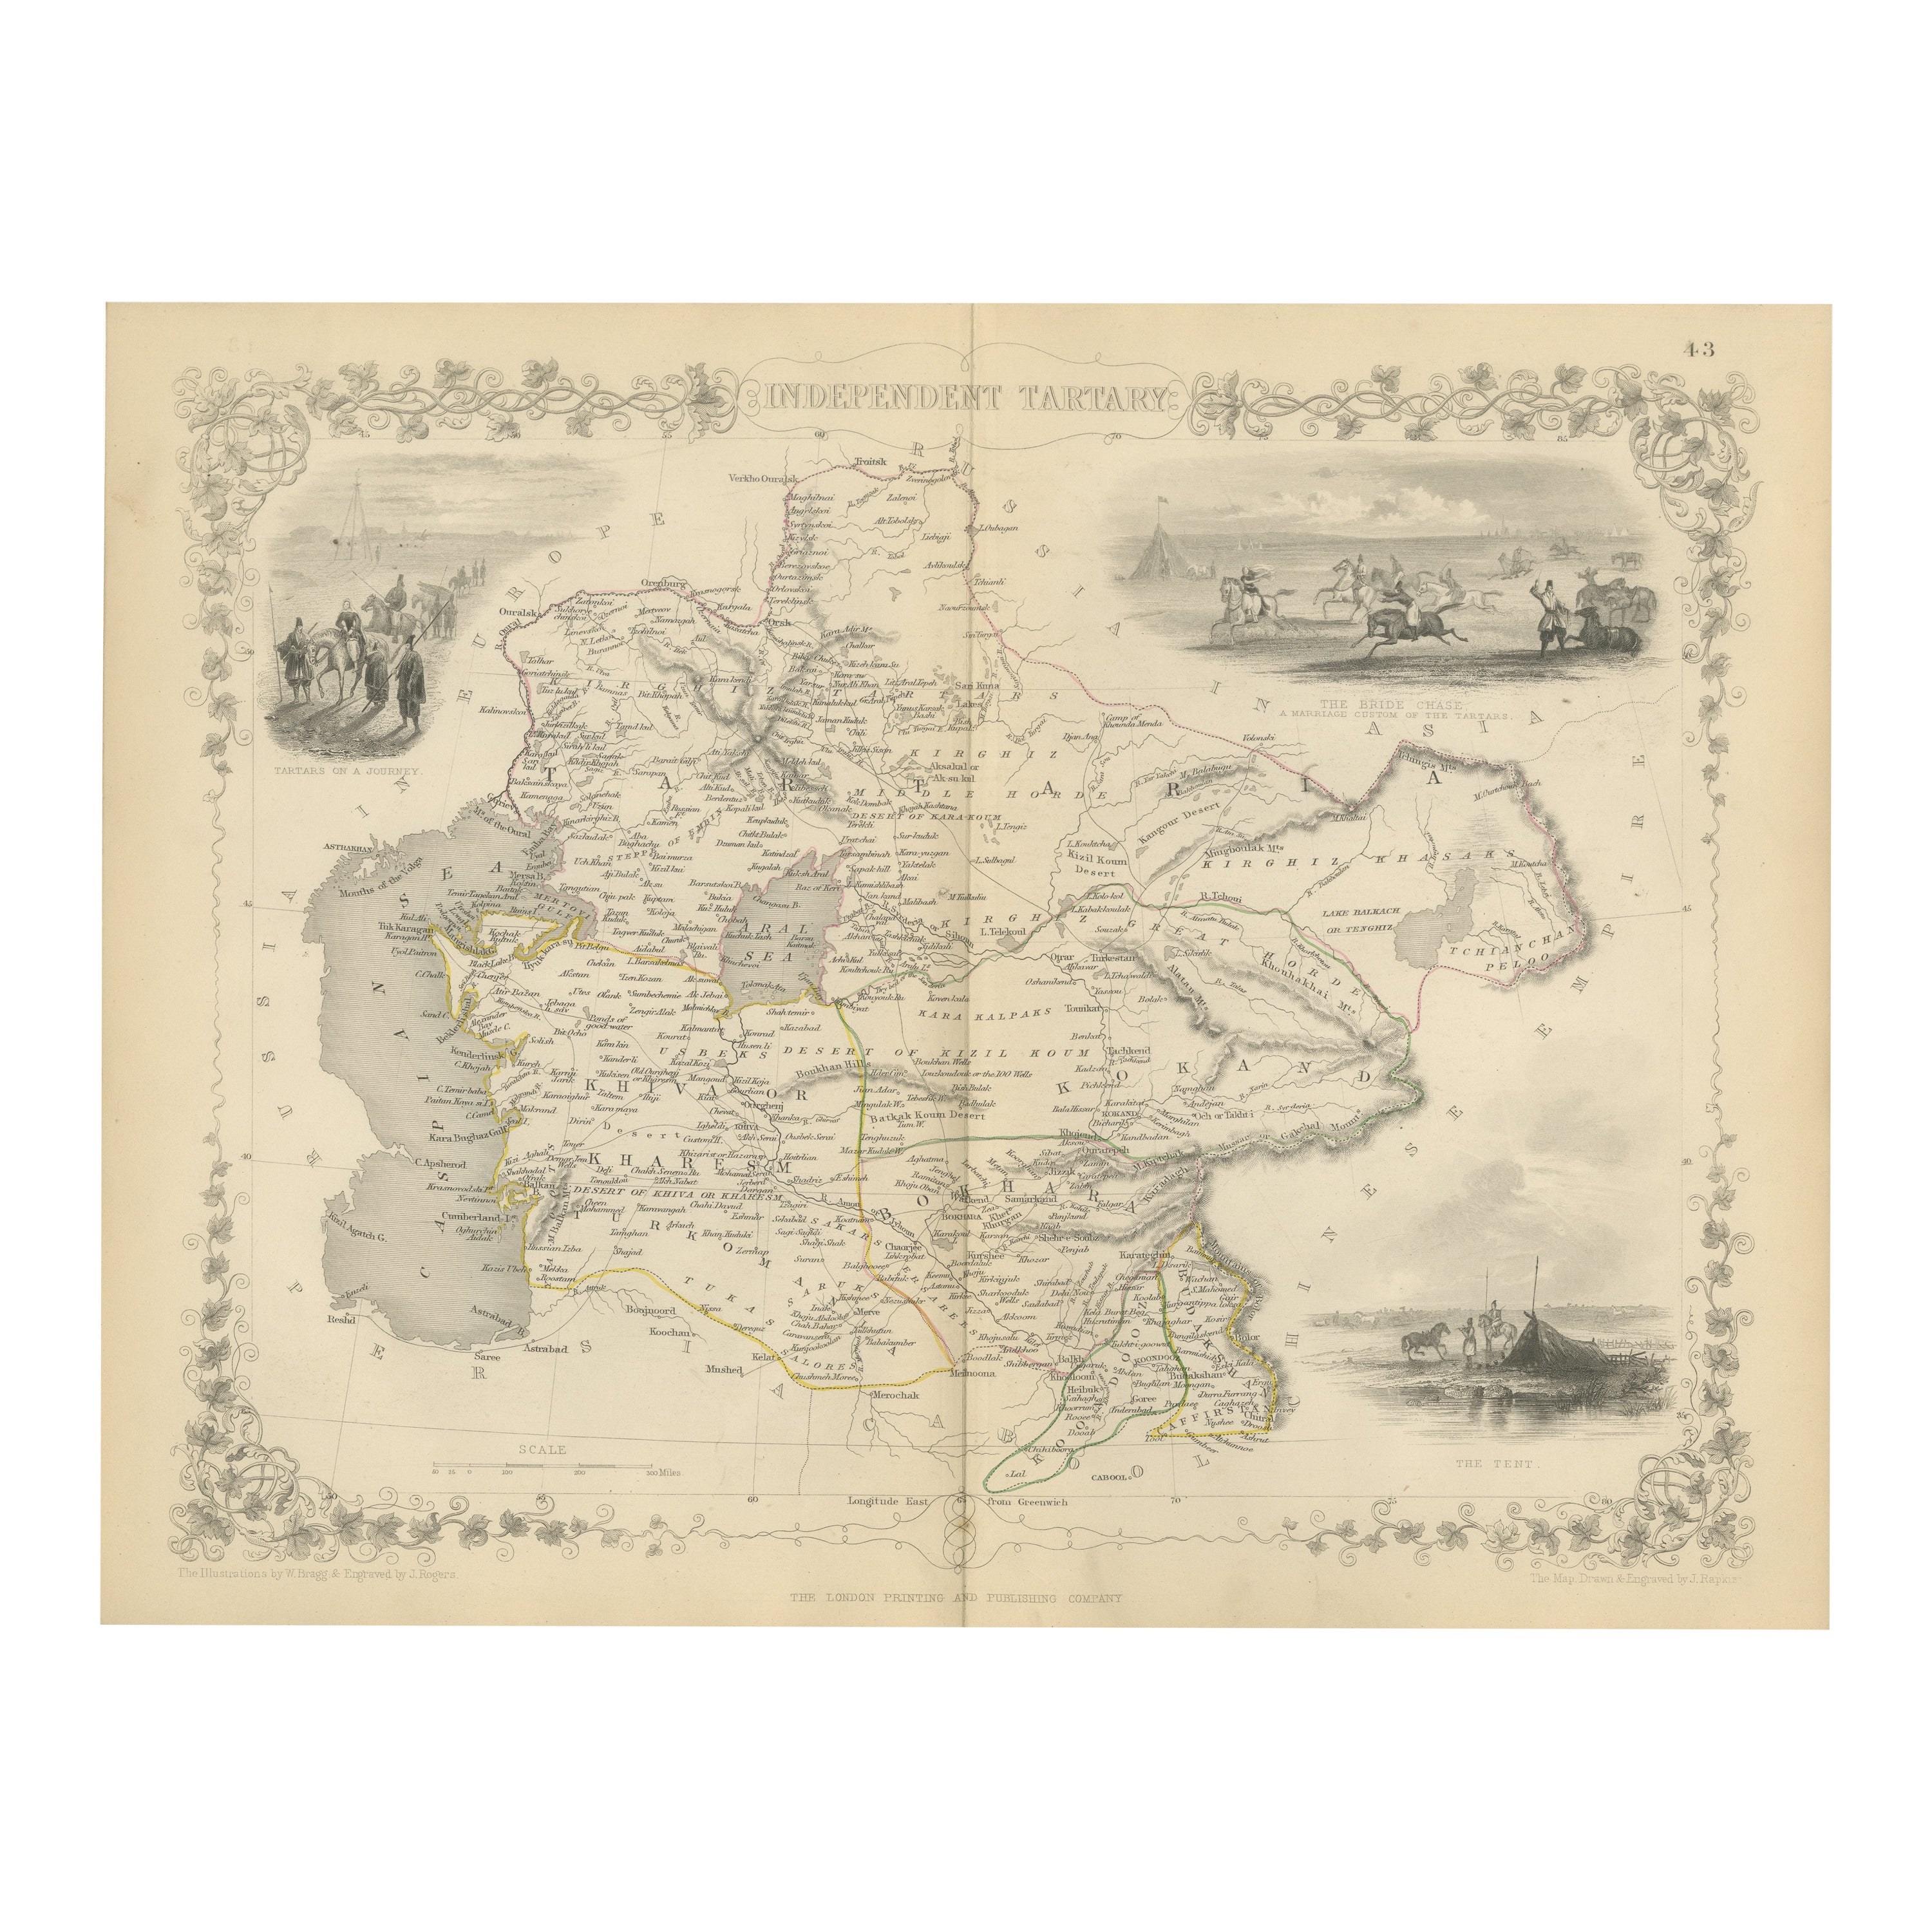 Carte de Tartarie indépendante avec Vignettes de la culture de la région, 1851